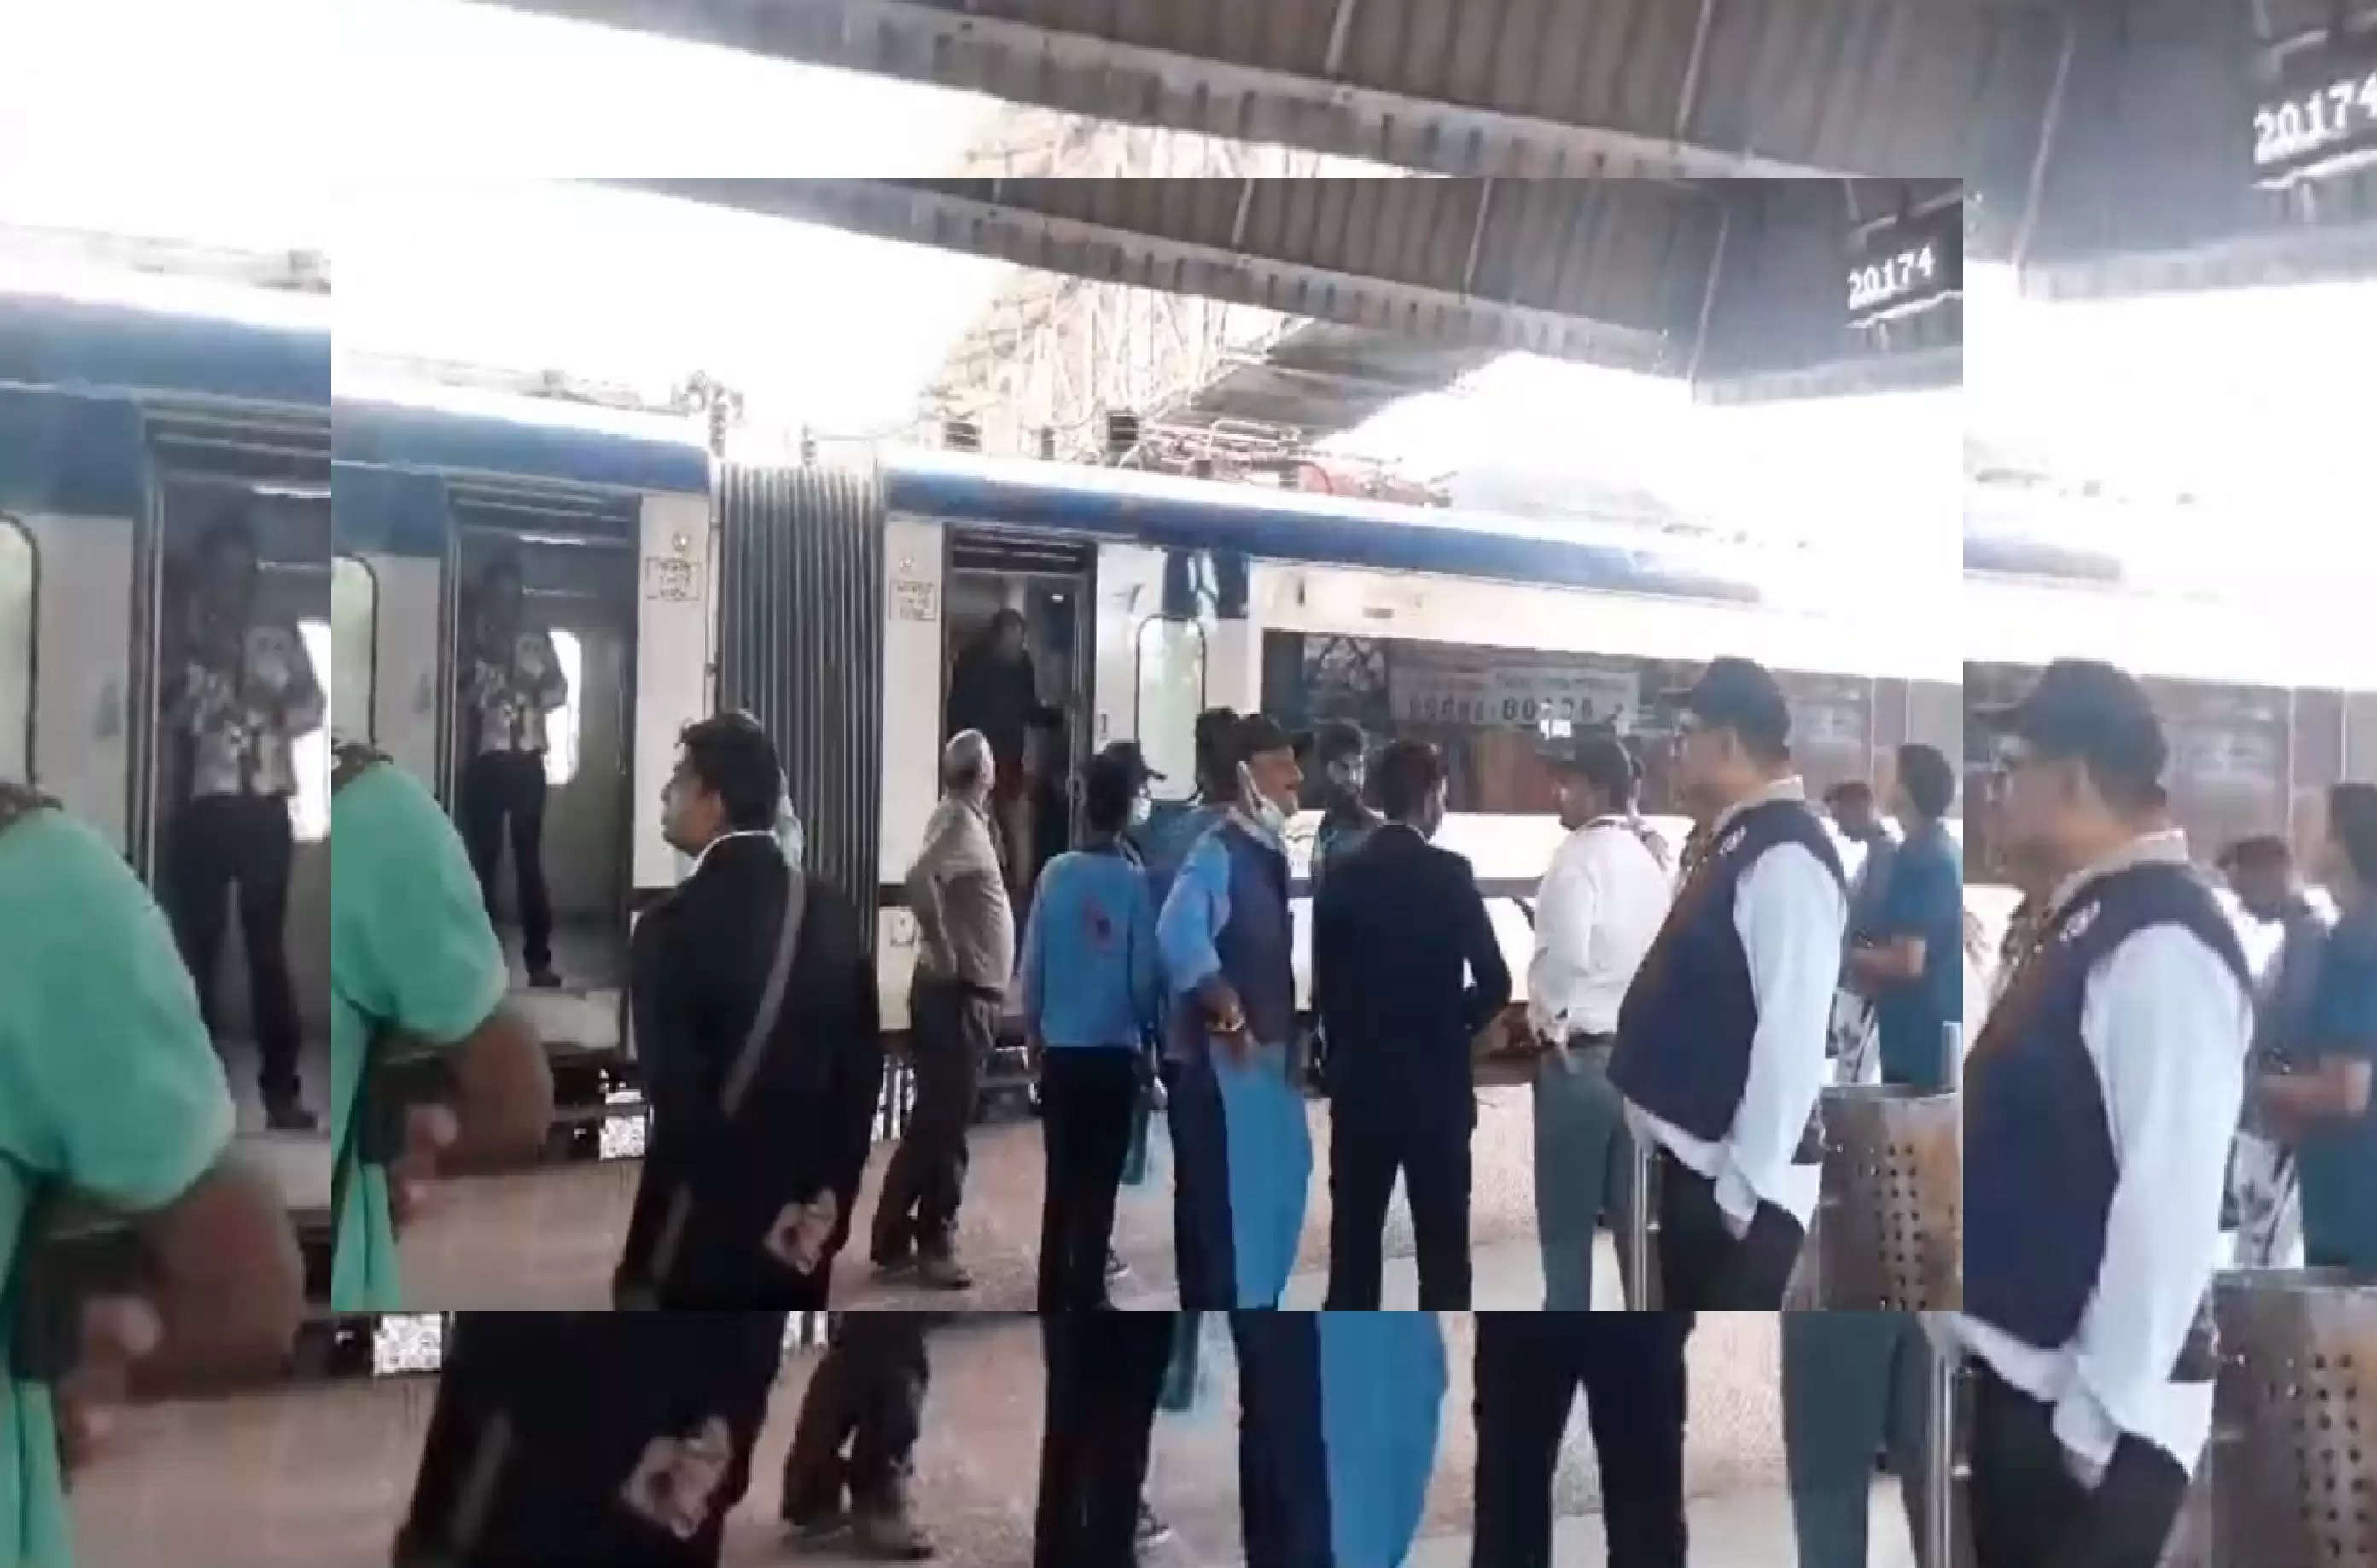  मप्र में वंदे भारत एक्सप्रेस में लगी आग, ट्रेन से नीचे उतरे यात्री